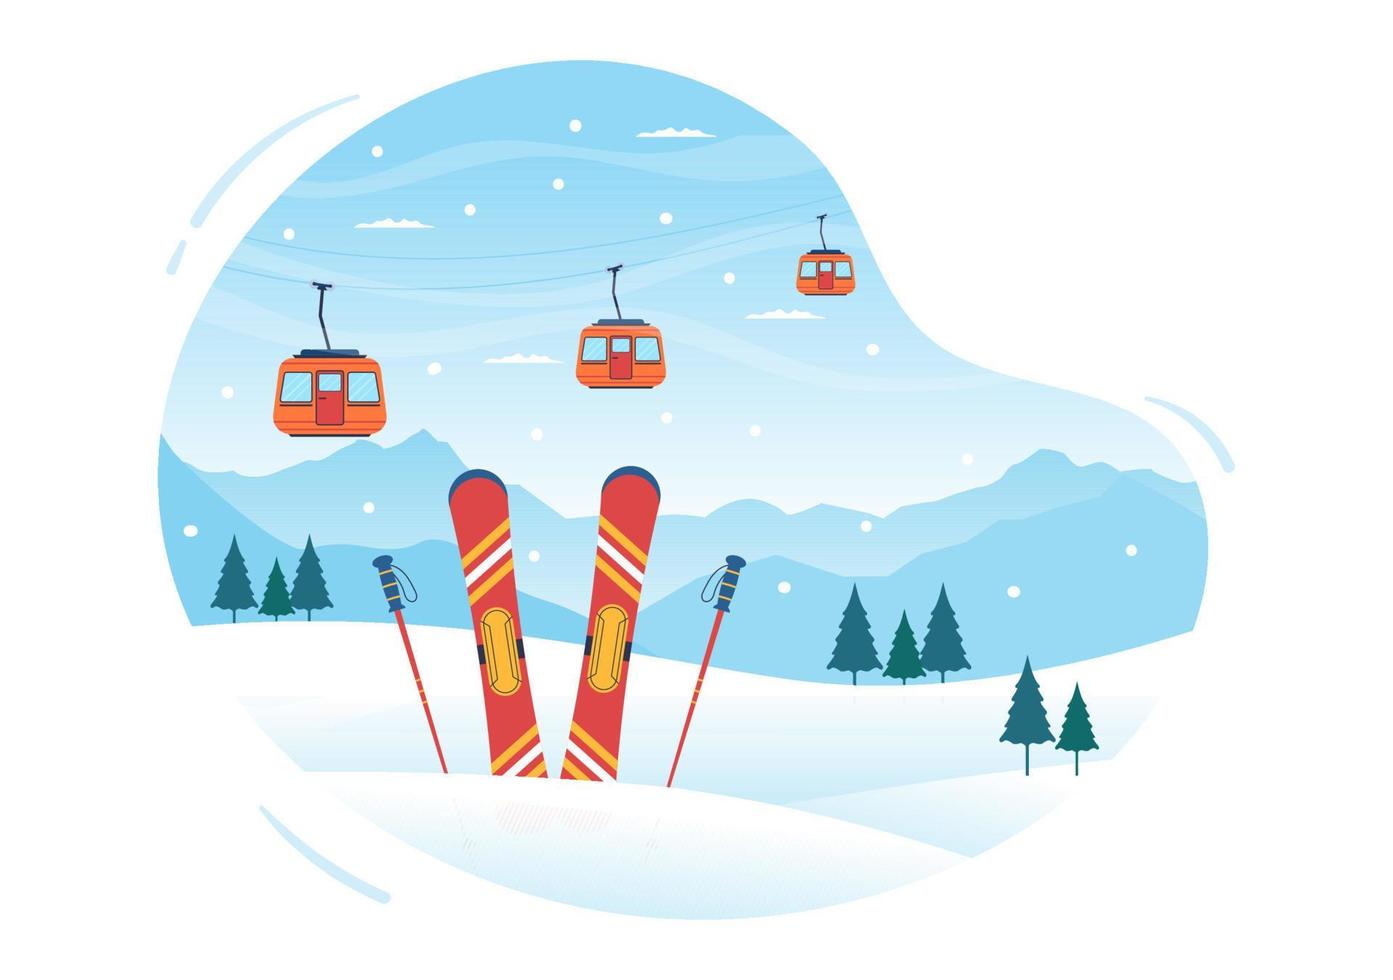 snowboard dibujado a mano ilustración plana de dibujos animados de personas en traje de invierno deslizándose y saltando con tablas de snowboard en laderas o laderas de montañas nevadas vector